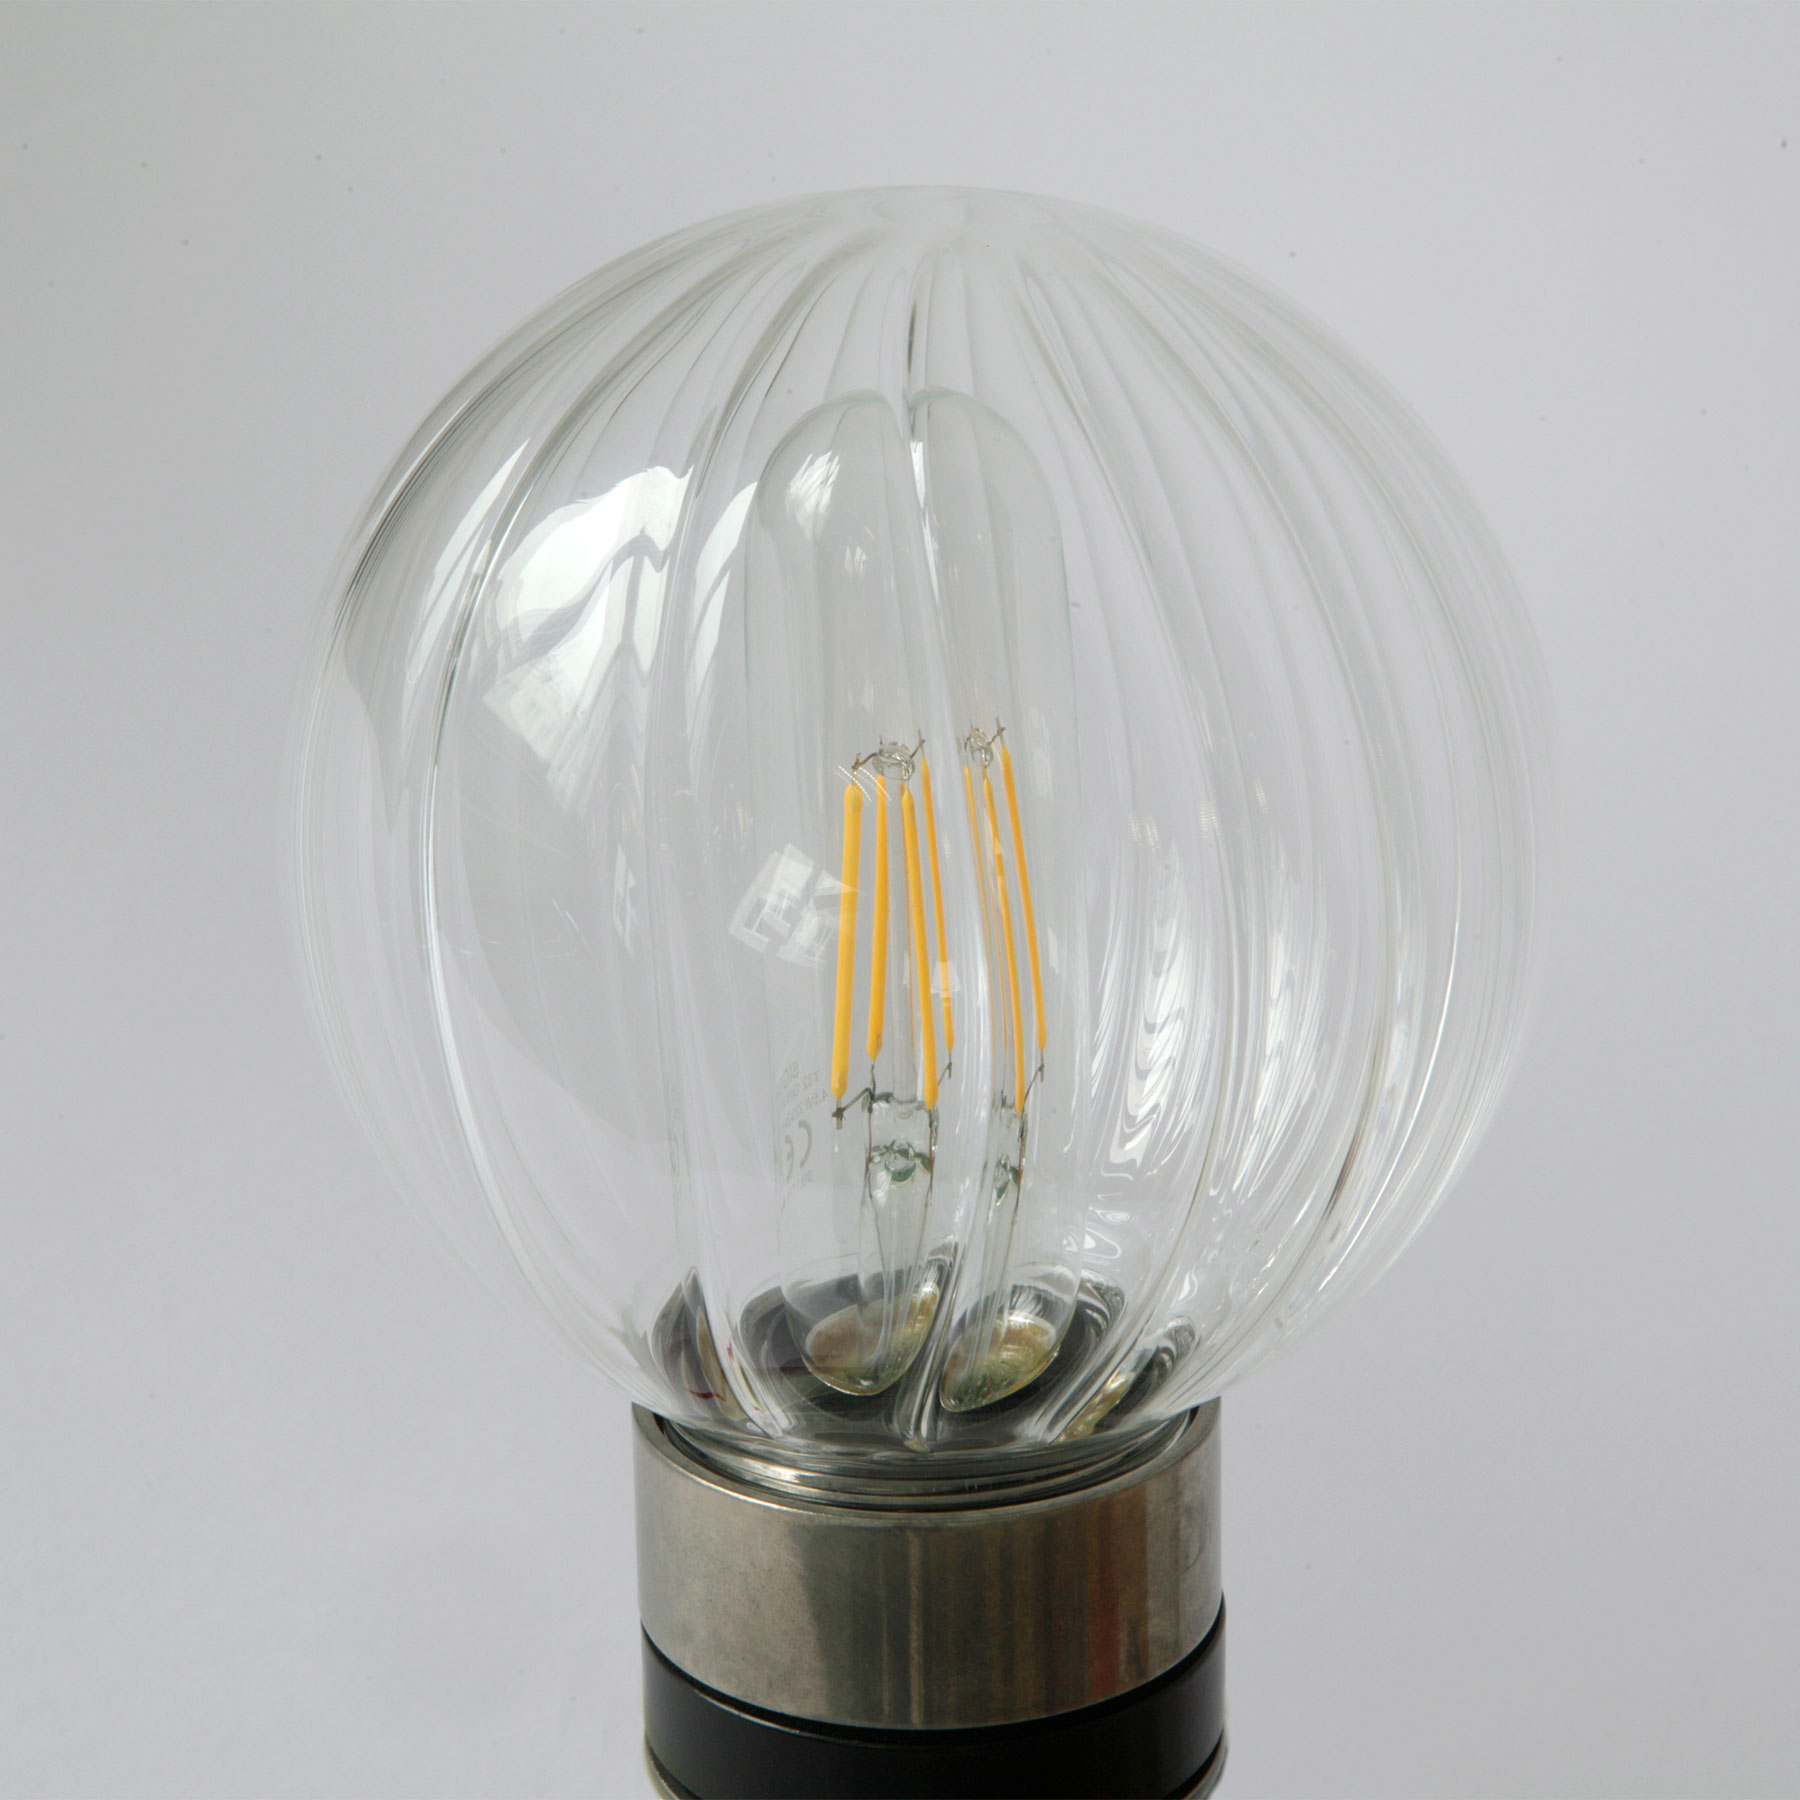 Bad-Wandlampe mit zwei Glaskugeln (klares, prismatisches, opales Glas), IP65: Messing alt-silbern (patiniert), gerilltes, prismatisches Glas